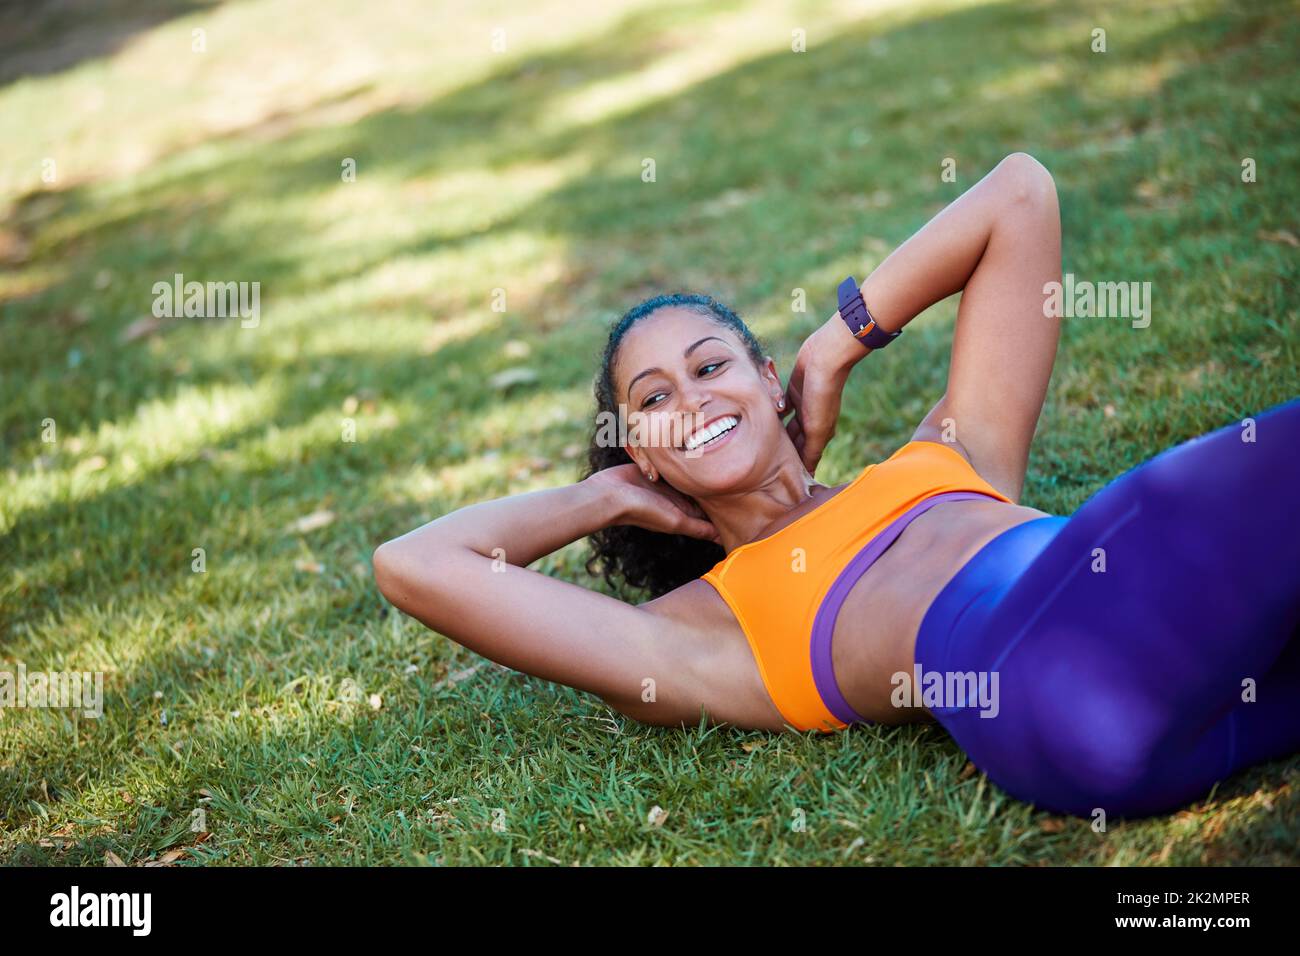 Im lavoro su un più forte me. Shot di una giovane donna sportiva che fa sit up come parte della sua routine di esercizio. Foto Stock